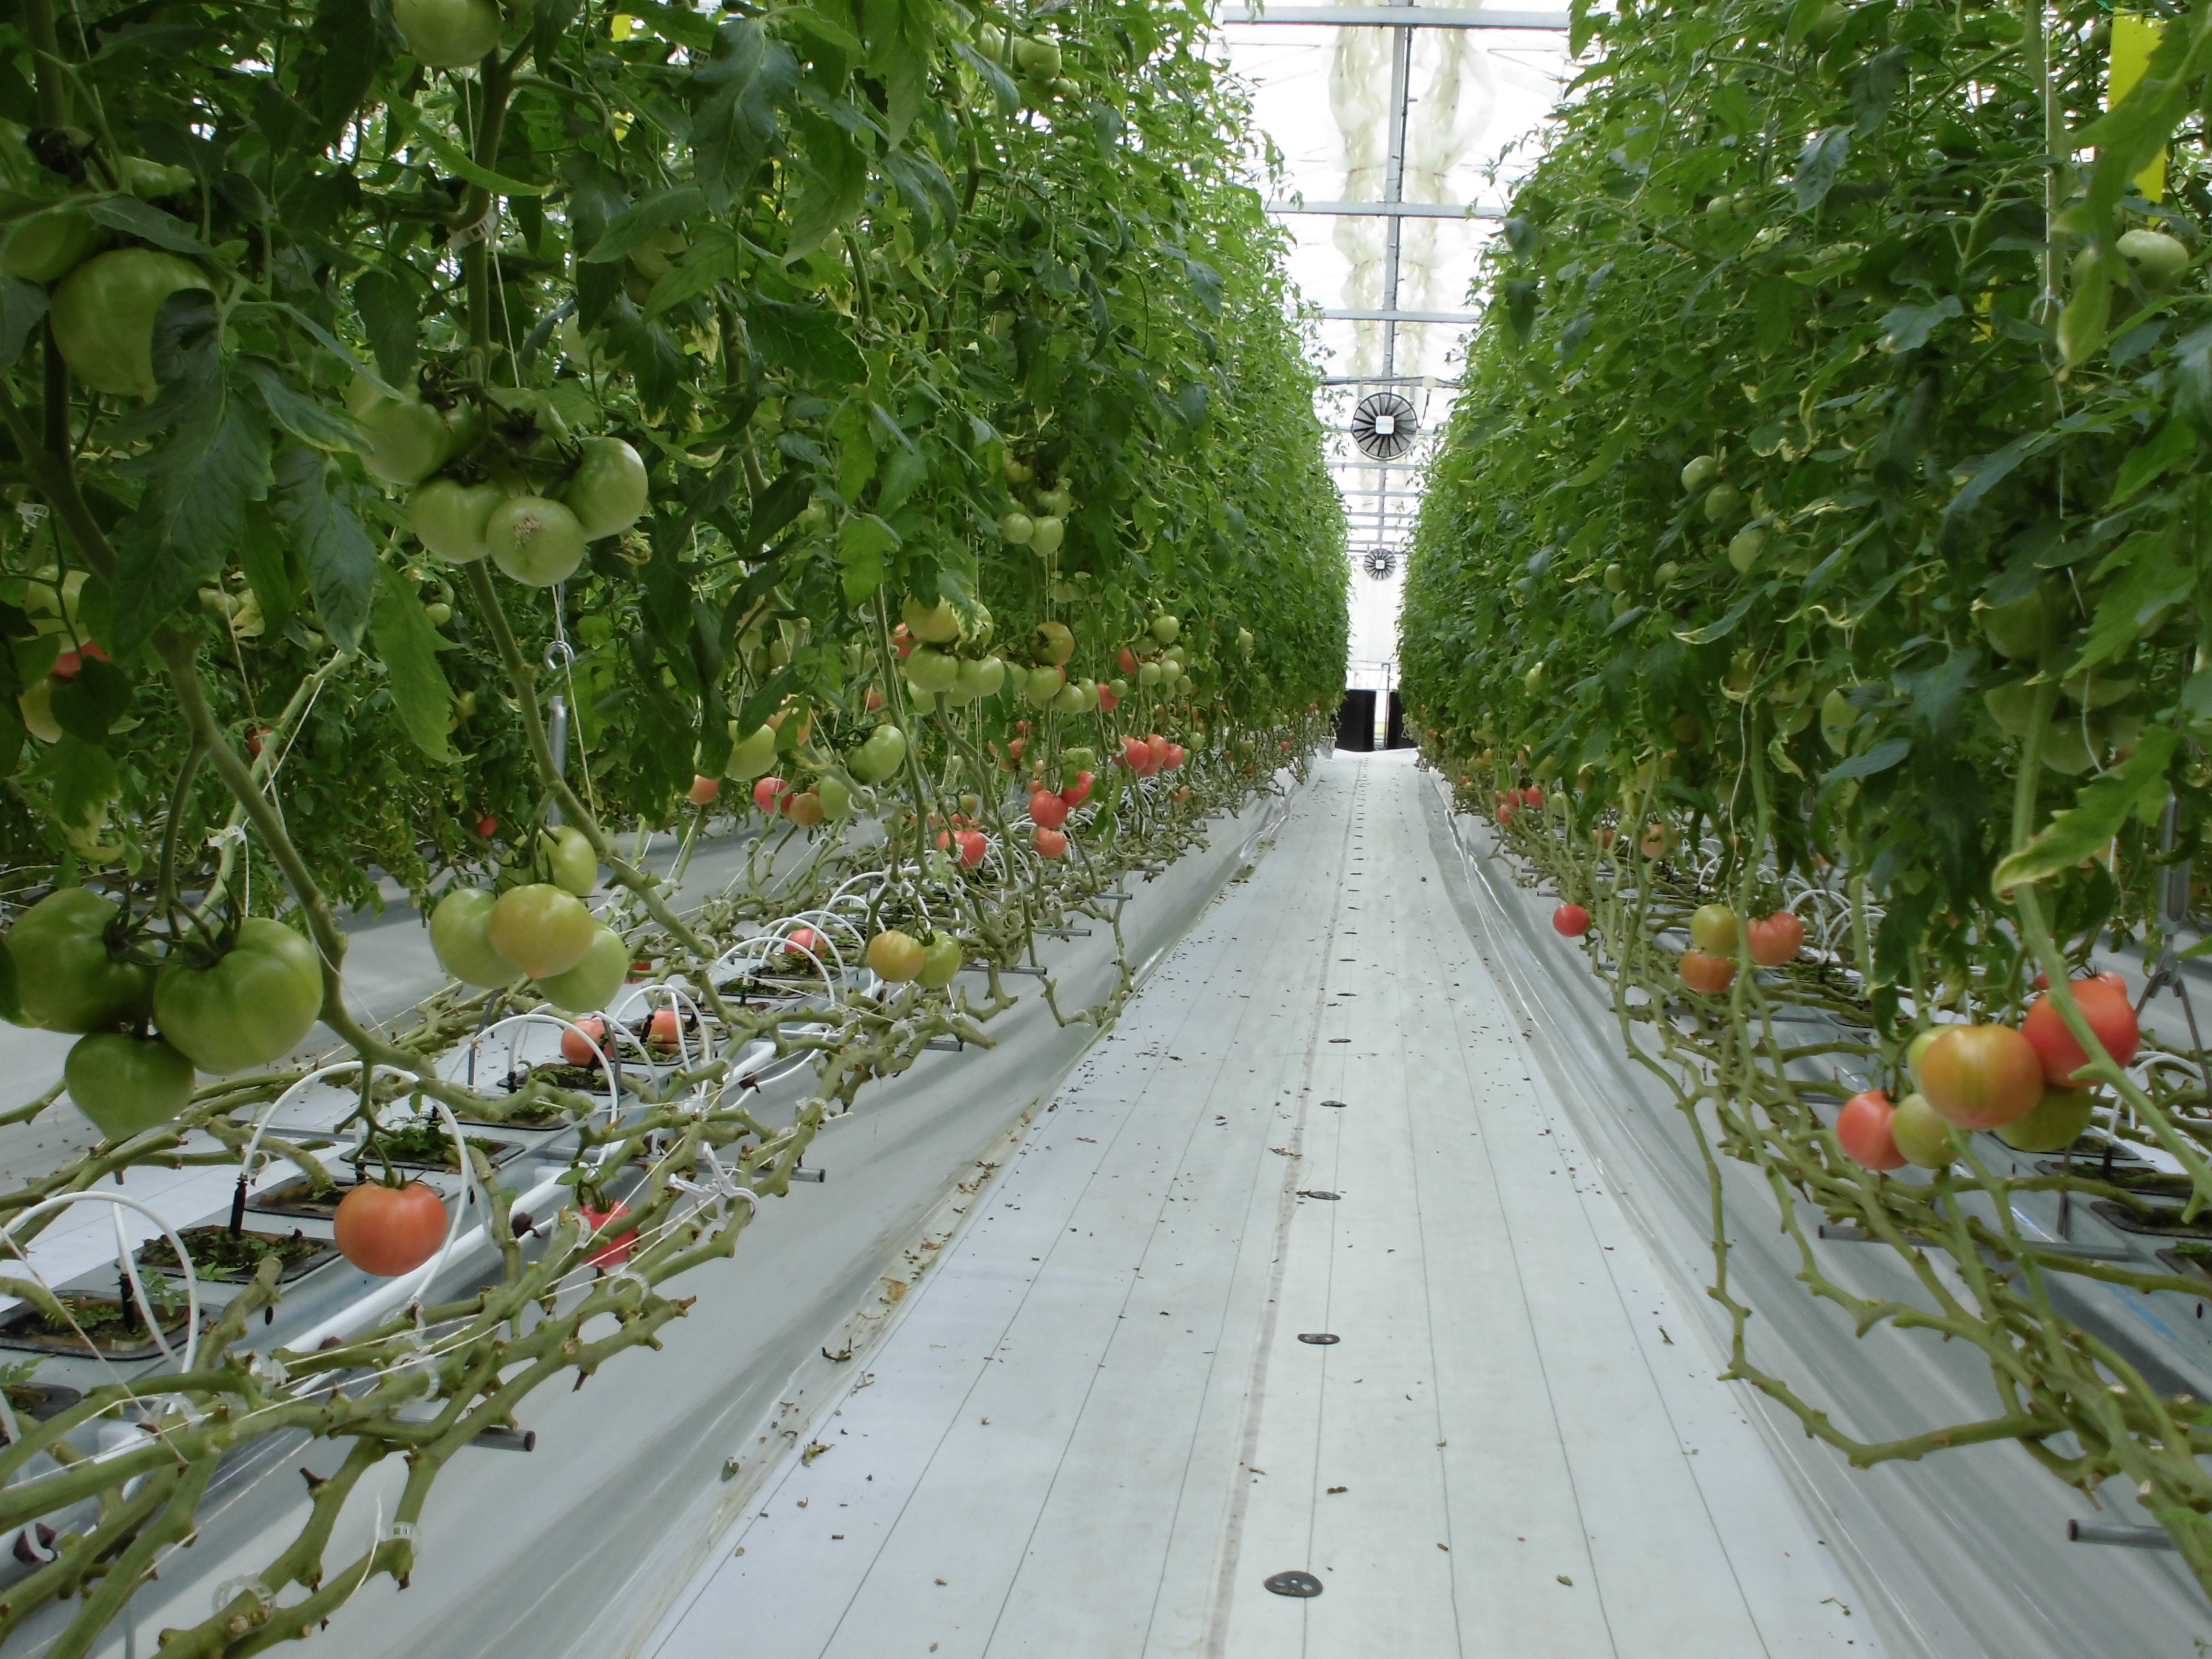 トマト独立ポット耕栽培システム